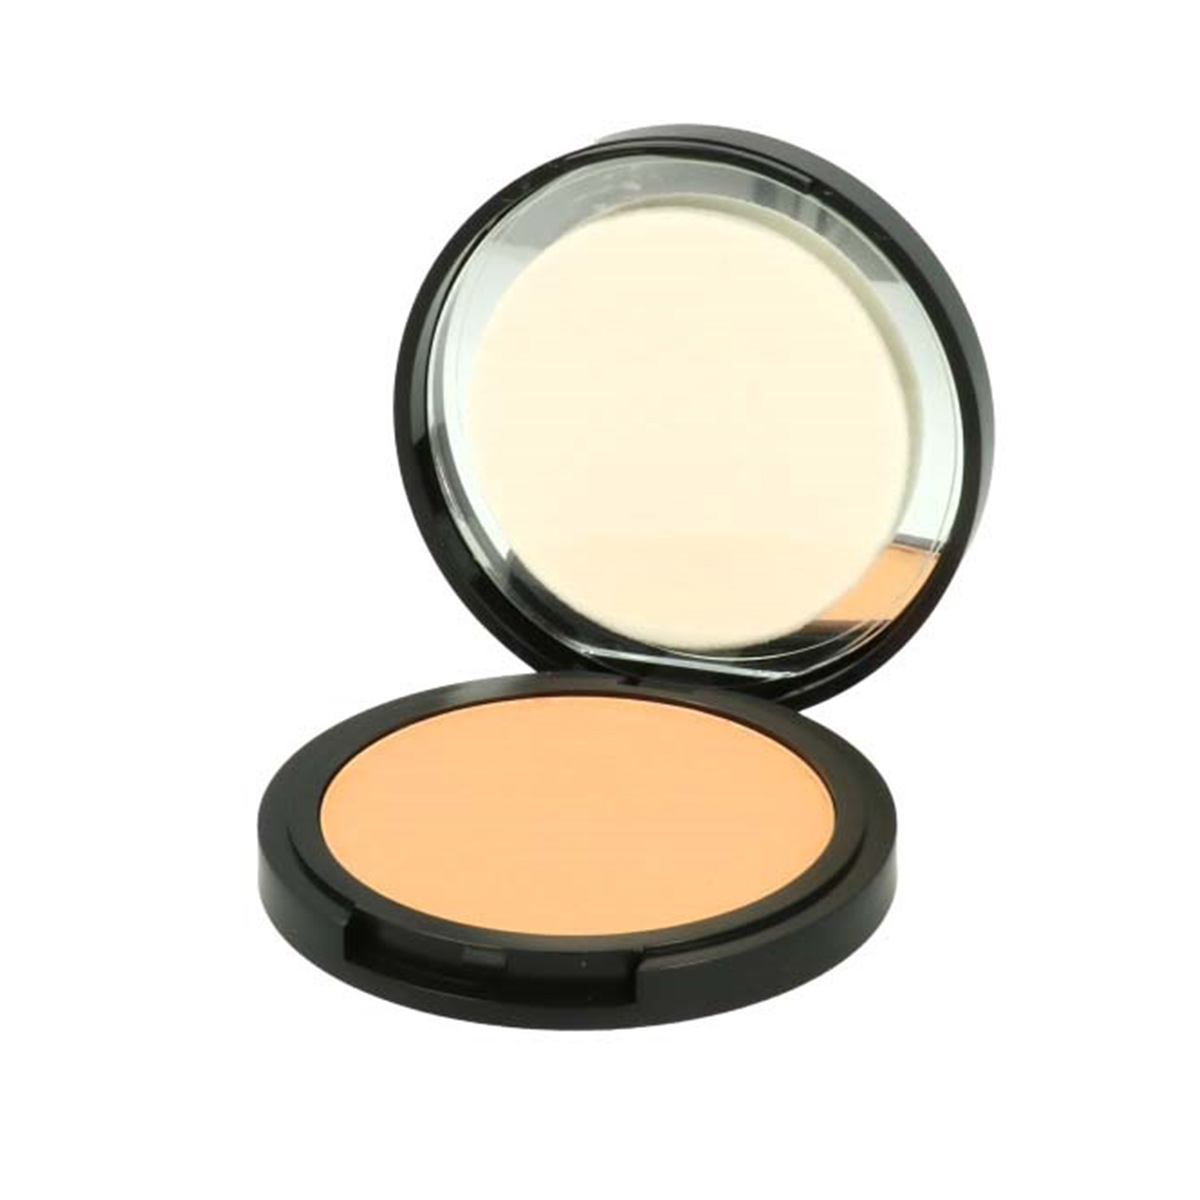 Компактная тональная основа Sleek MakeUp Тон 3 revolution makeup тональная основа irl filter longwear foundation